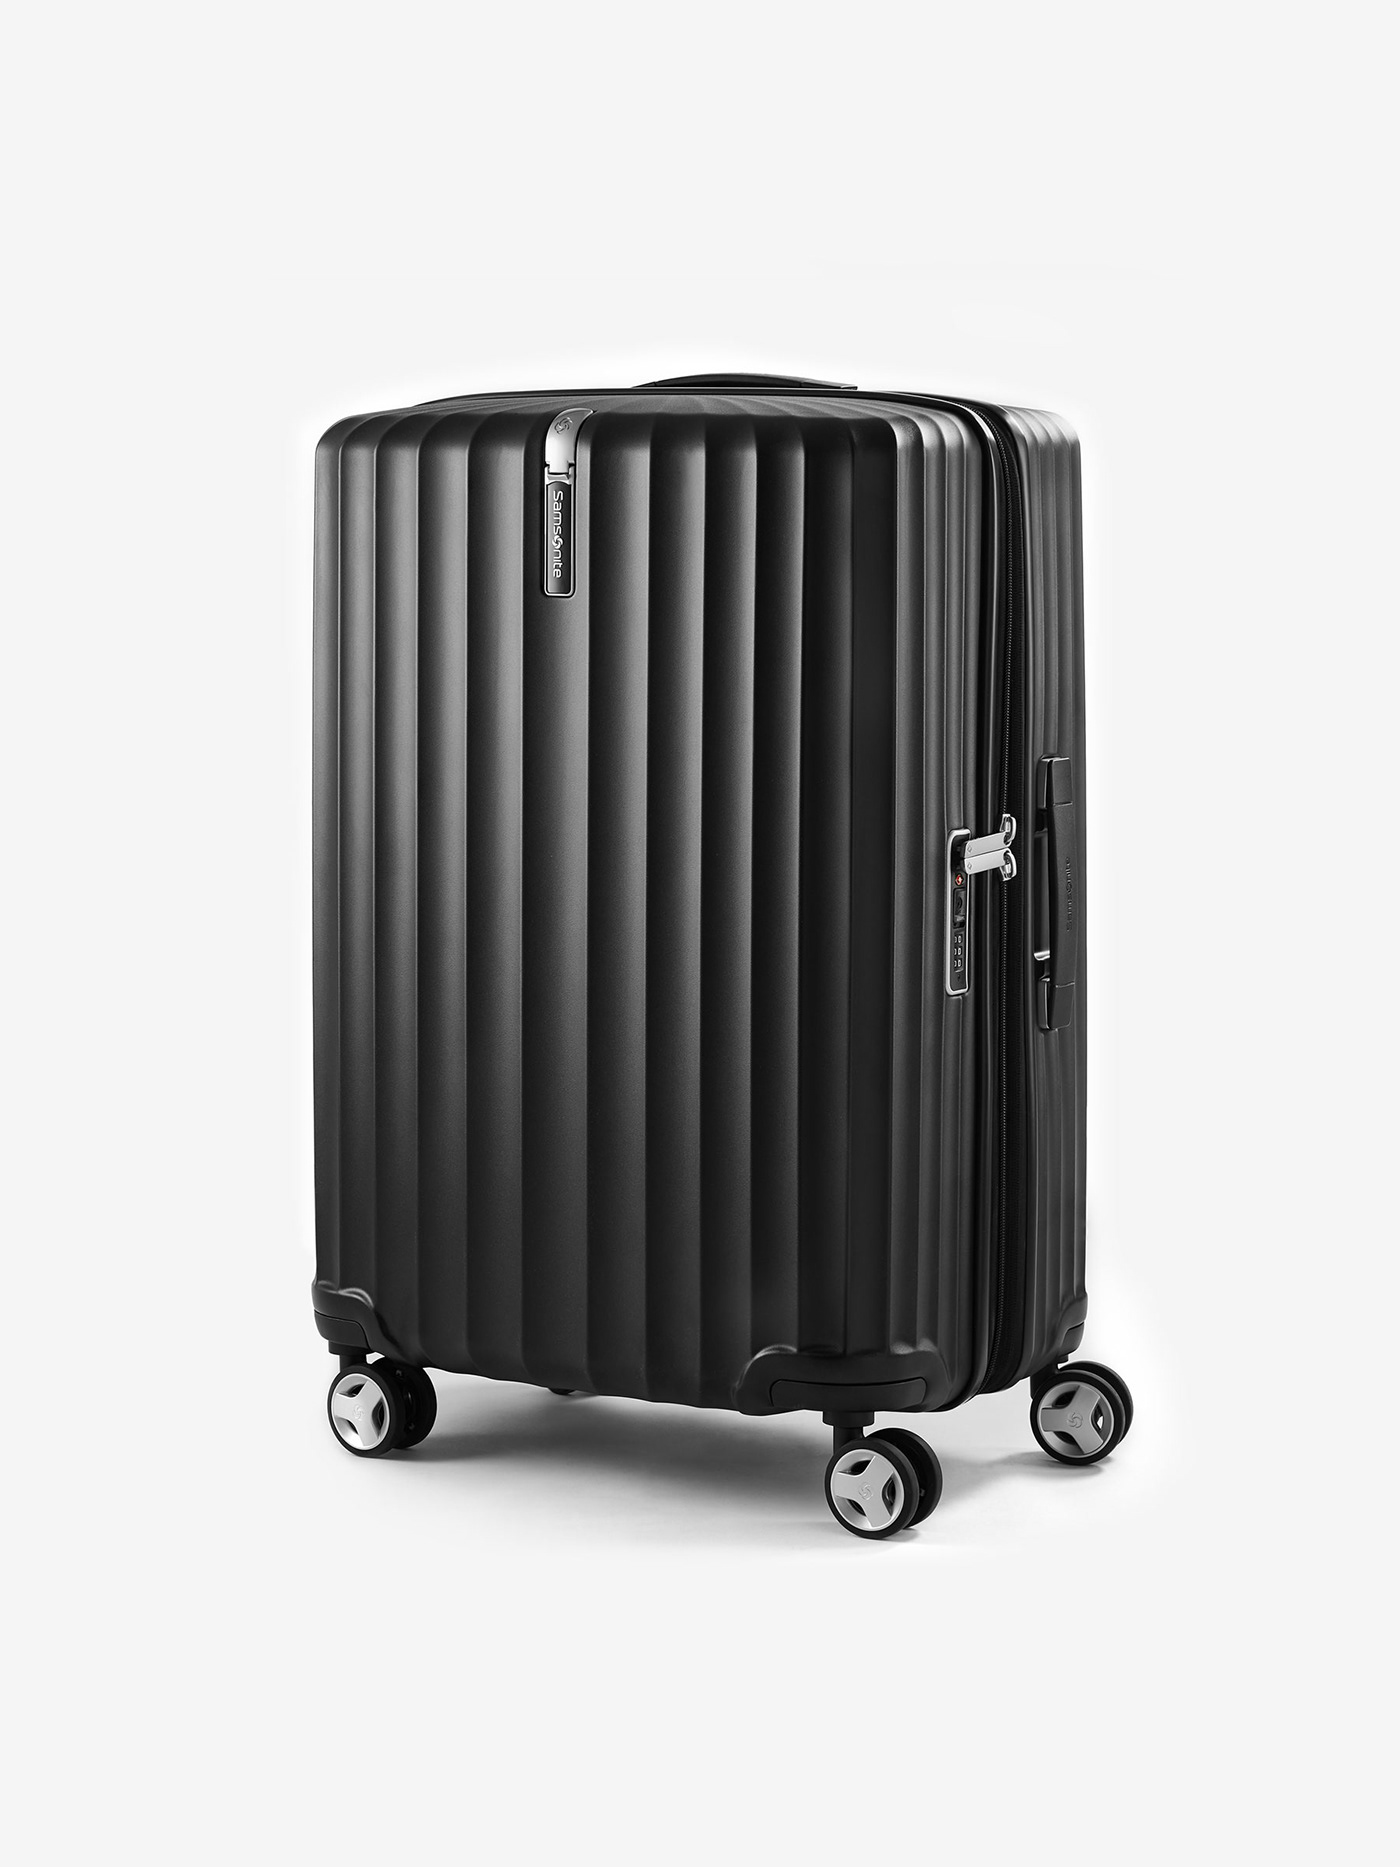 bag cmf industrial design  luggage plane product design  samsonite suitcase texture Travel